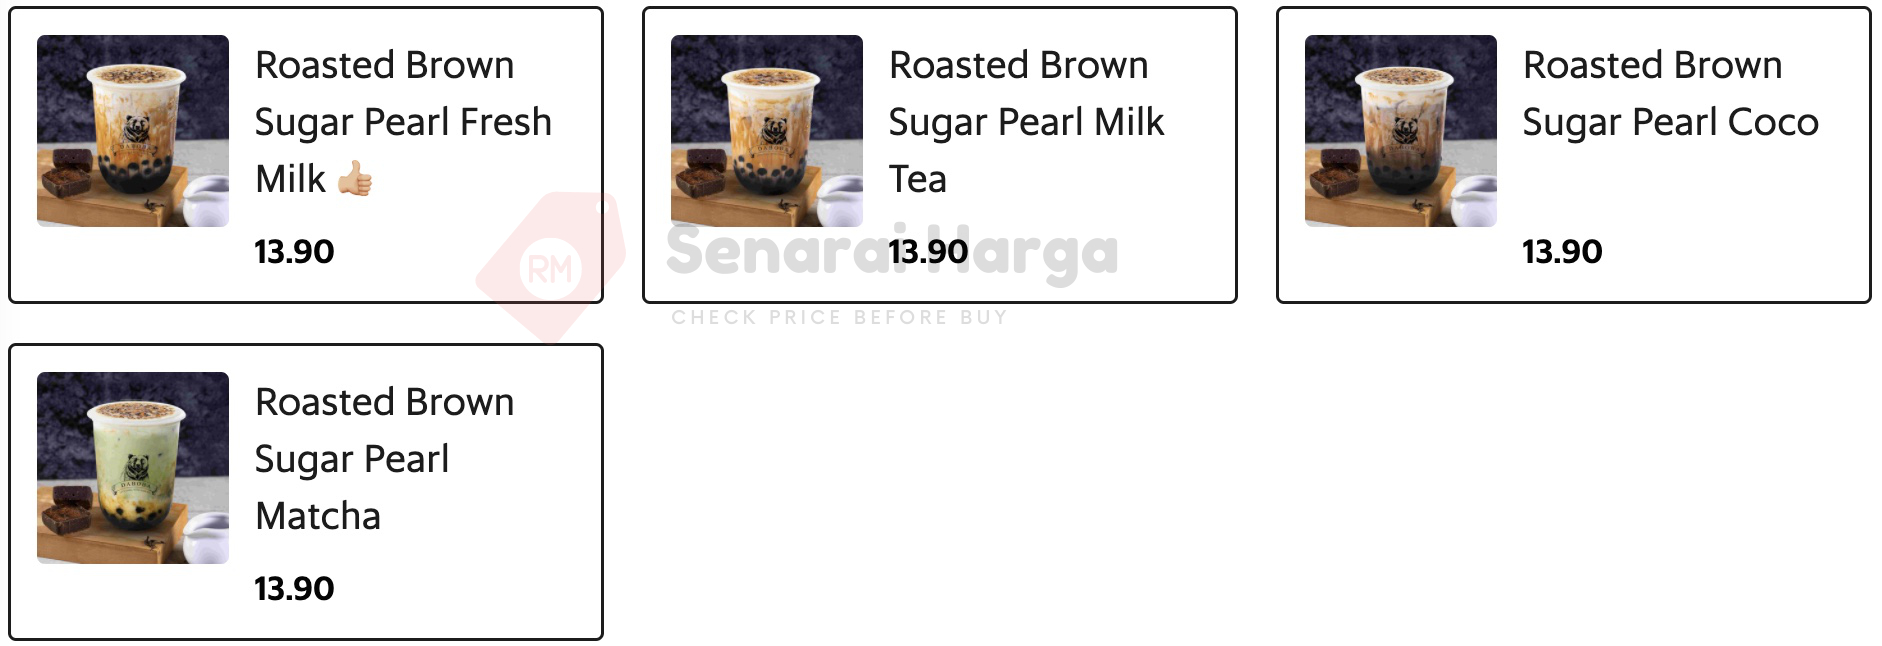 Roasted Brown Sugar Series Menu Daboba